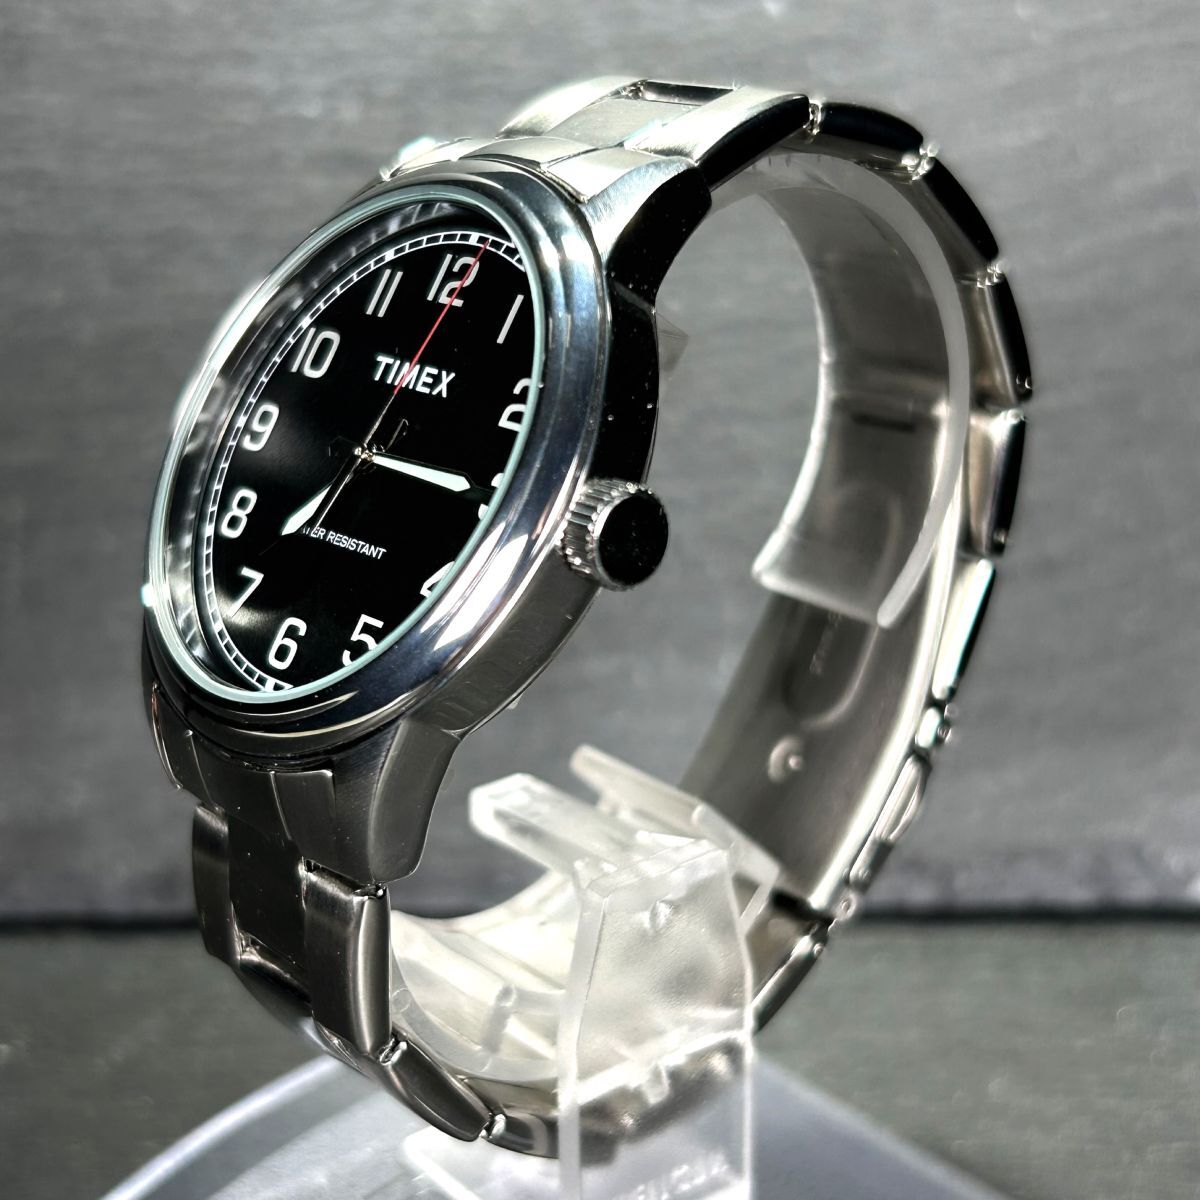  прекрасный товар Timex Timex TW 2R36700 наручные часы кварц аналог календарь черный циферблат чёрный нержавеющая сталь мужской рабочее состояние подтверждено 